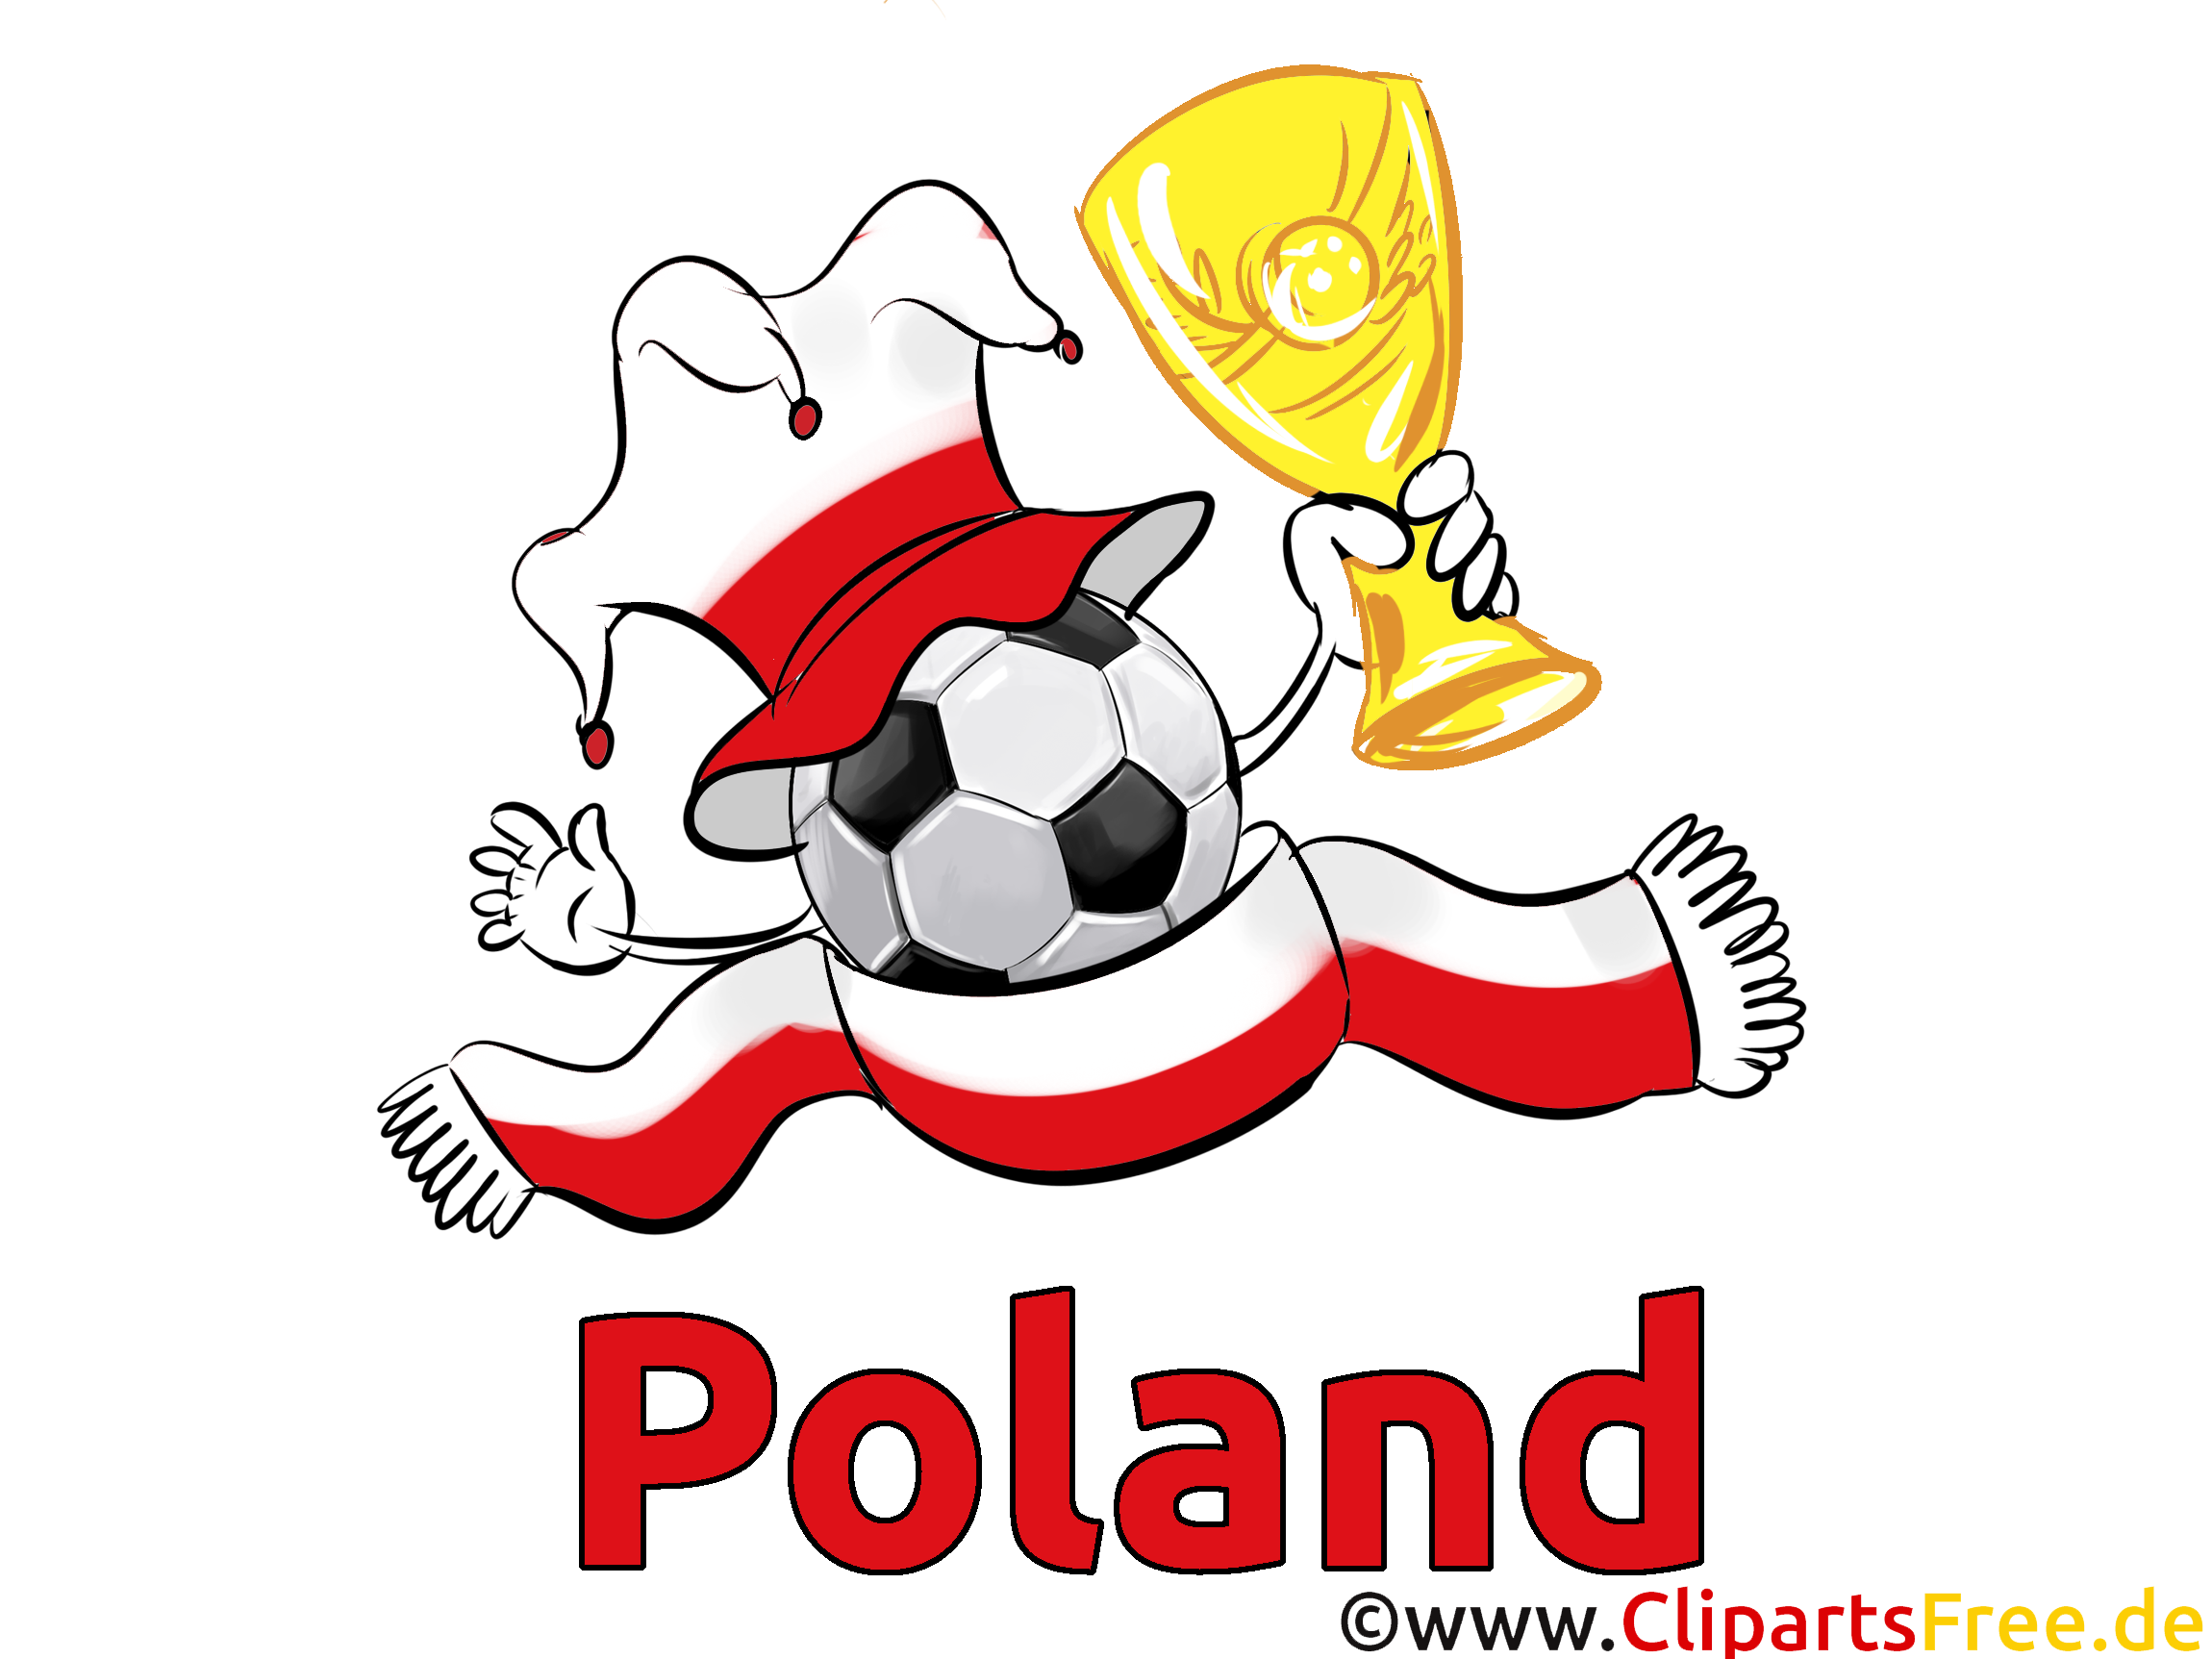 Télécharger Soccer Images Pologne gratuitement